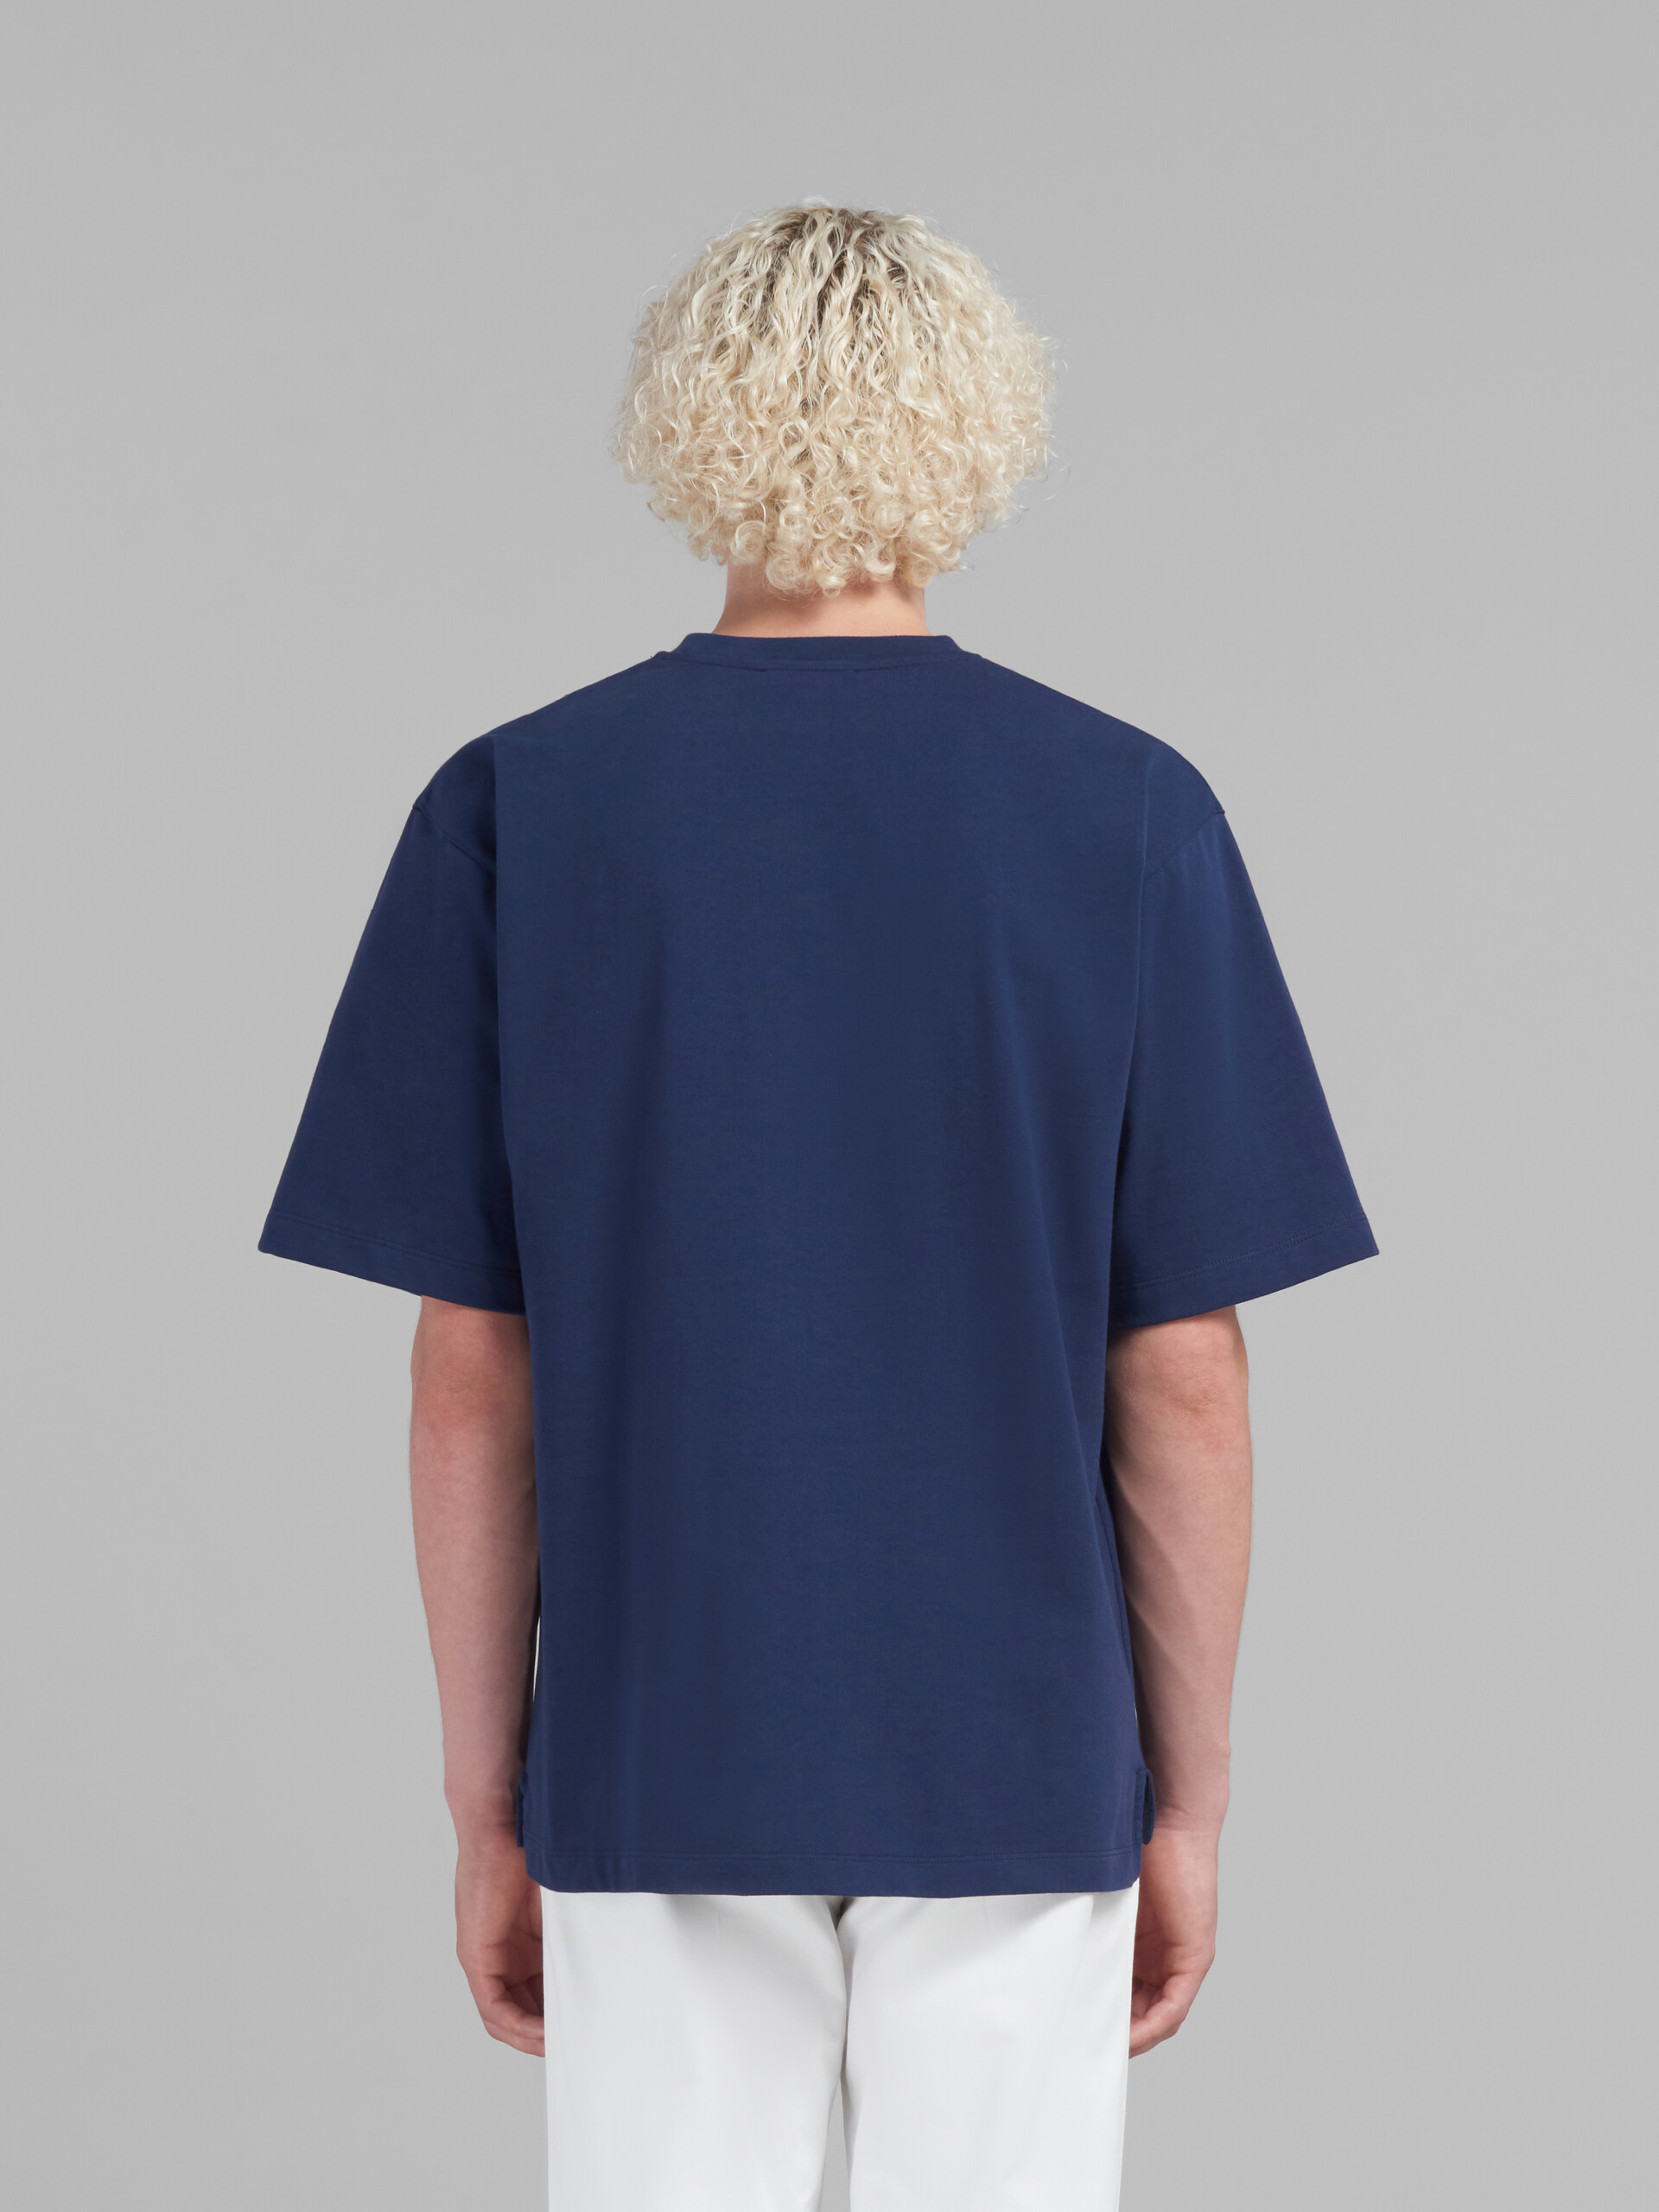 ブルー マルニパッチ付き オーガニックコットン製オーバーサイズTシャツ - Tシャツ - Image 3